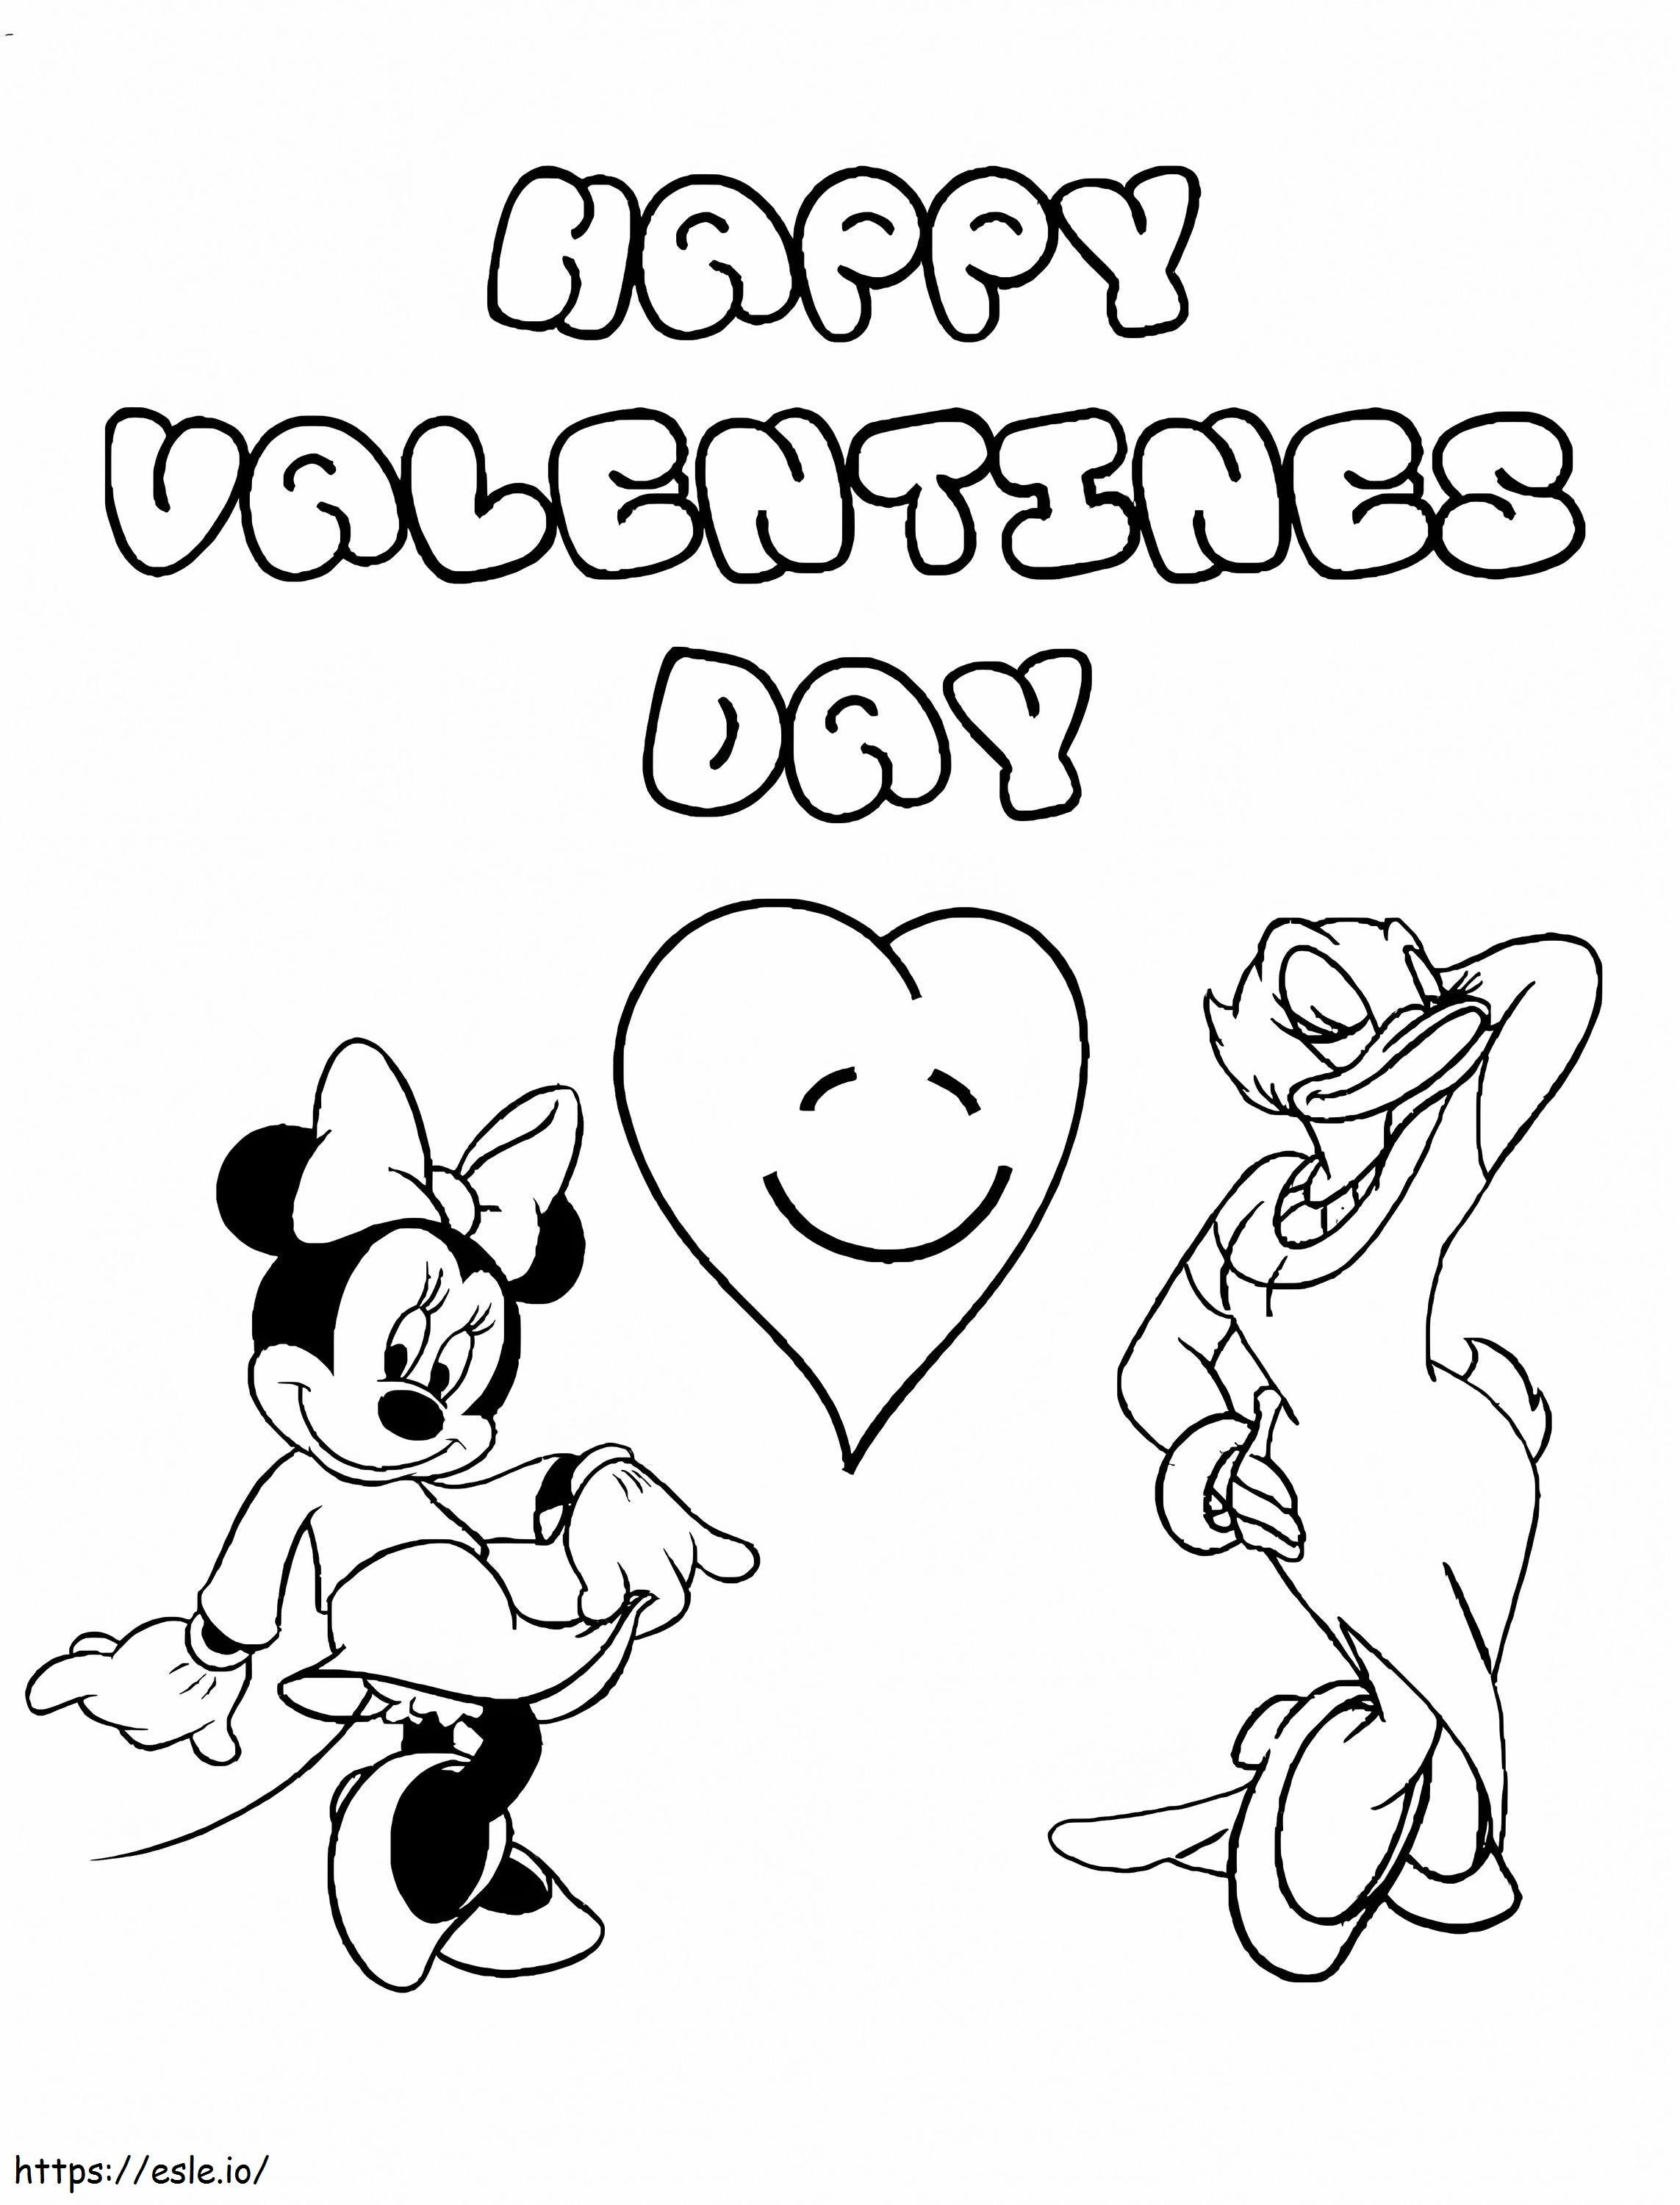 Coloriage Daisy Duck et Minnie Mouse Disney Saint-Valentin à imprimer dessin